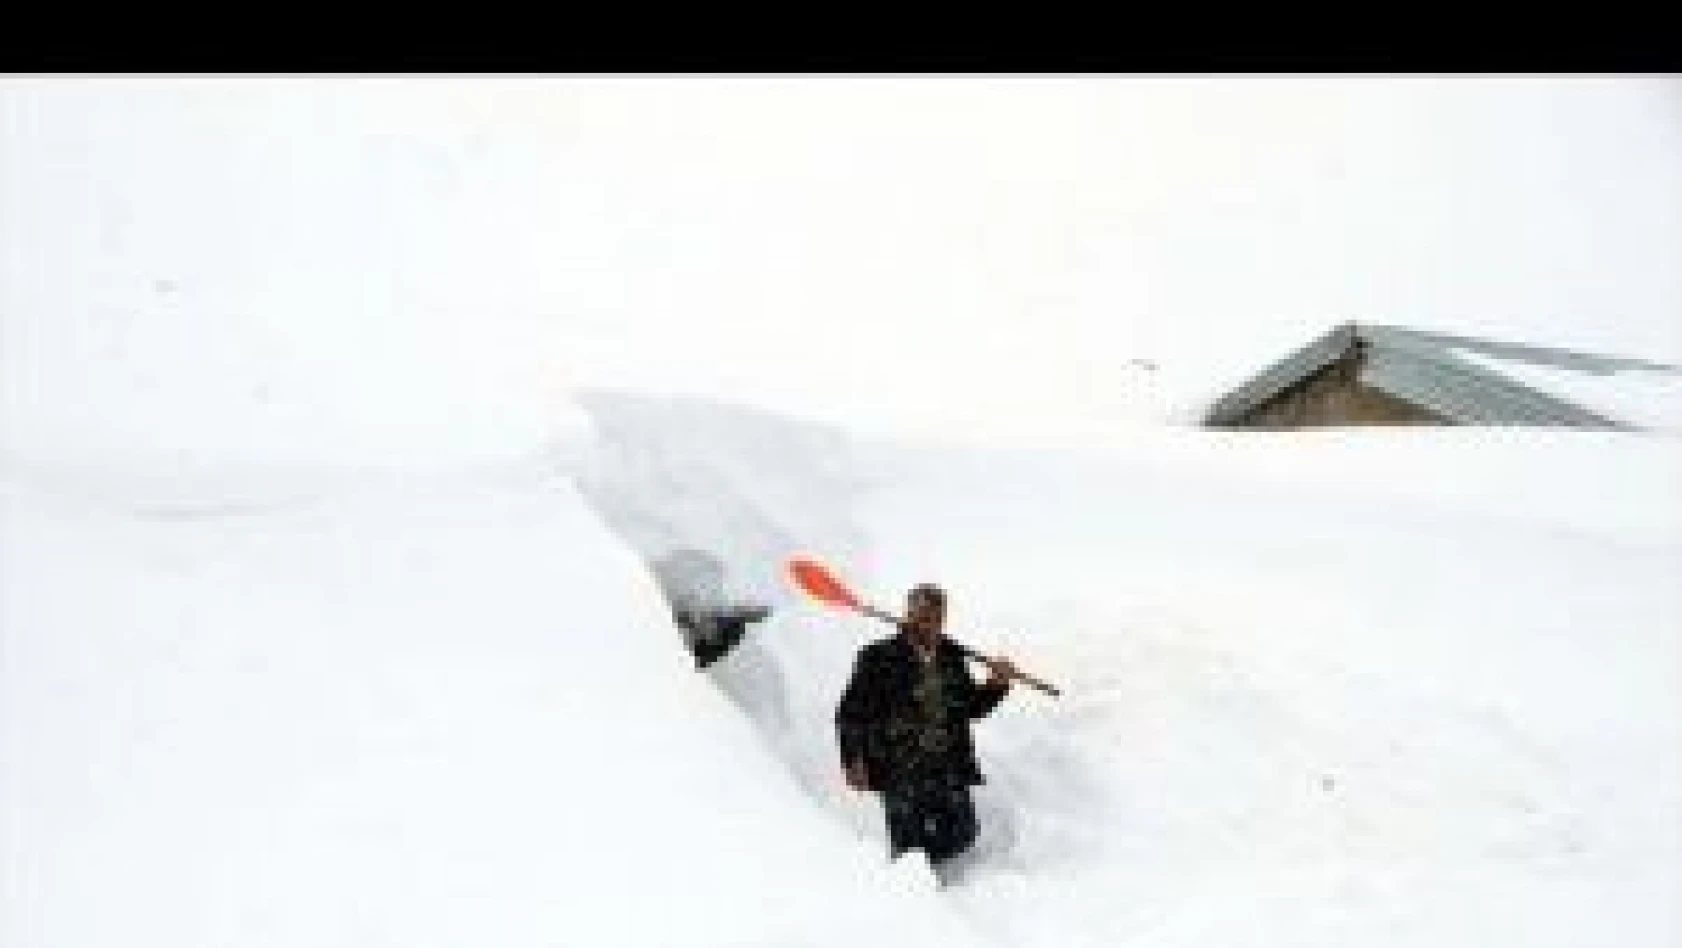 Muş'un Yukarıyongalı köyünde evler kar altında kaldı